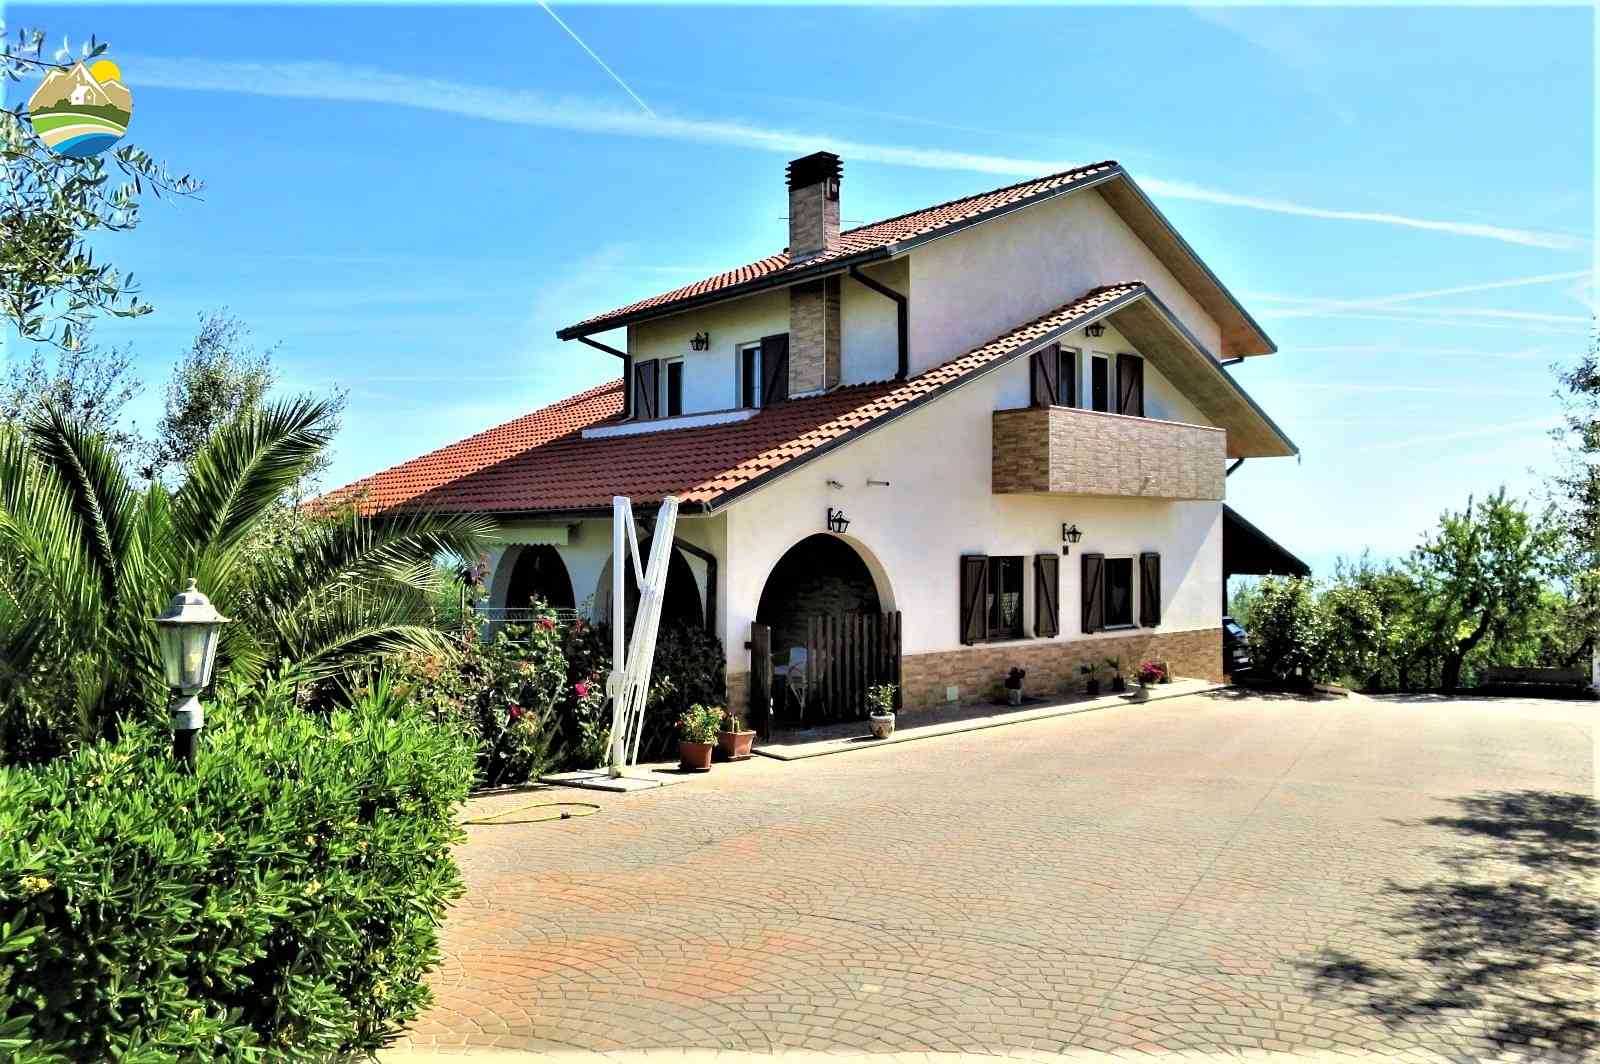 Villa Villa for sale Pineto (TE), Villa Miramare - Pineto - EUR 543.189 10